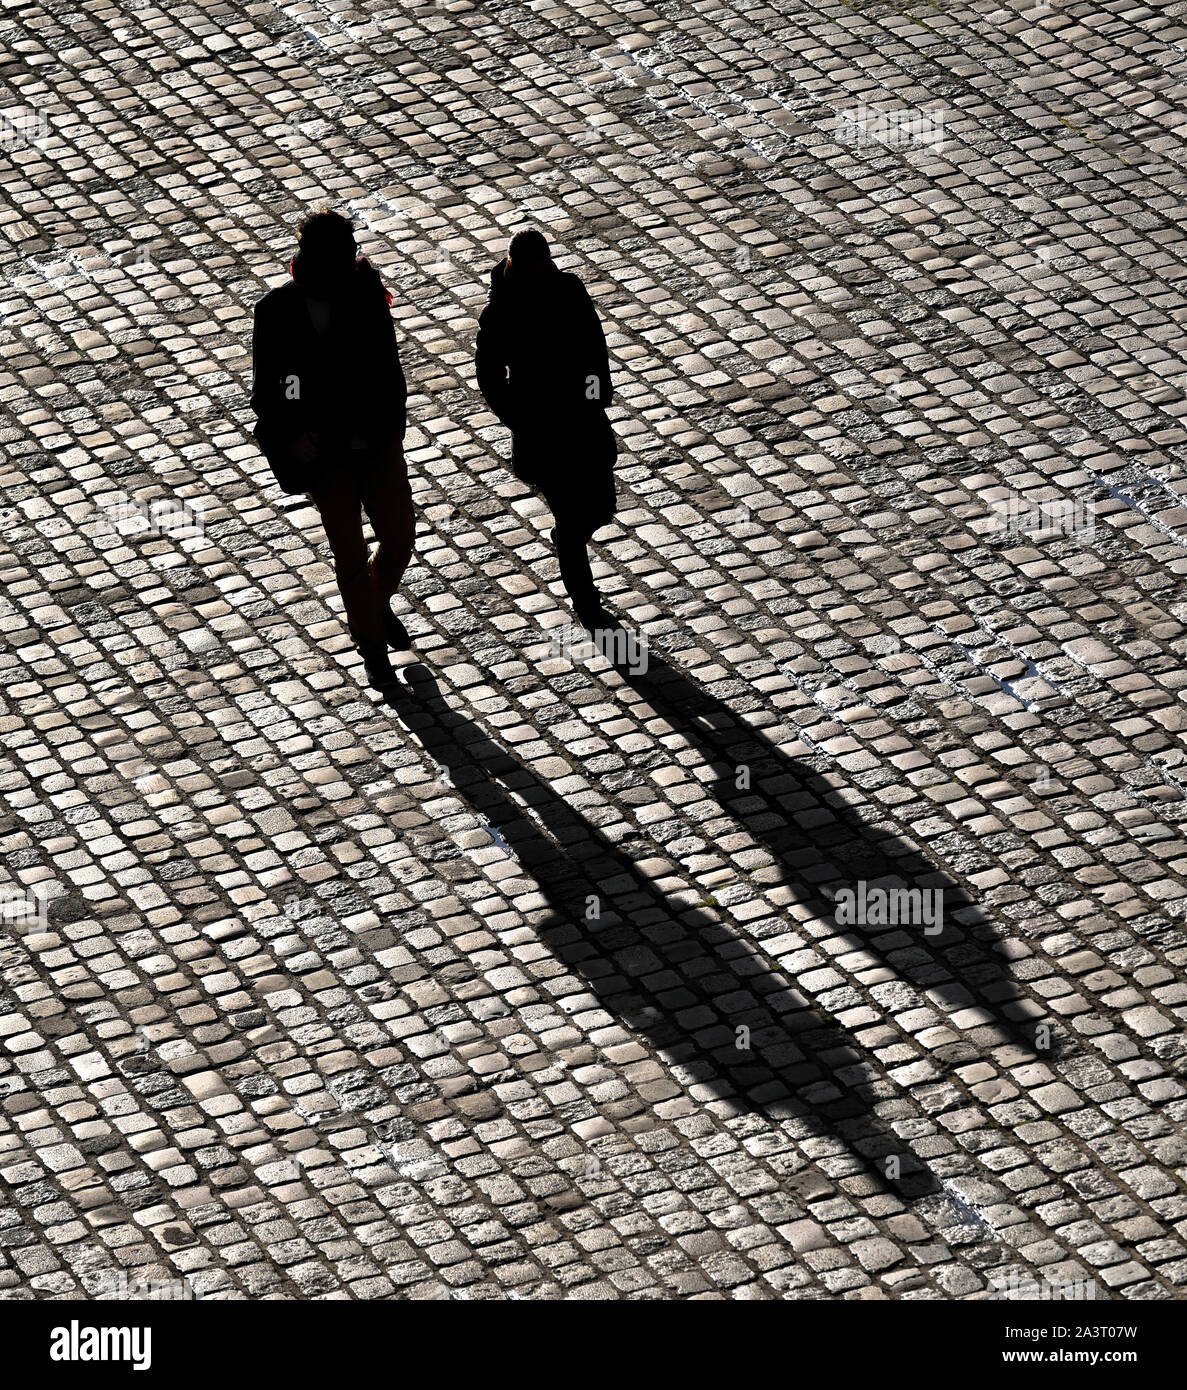 Dos transeúntes caminando en una carretera asfaltada, proyectando sus sombras. Foto de stock